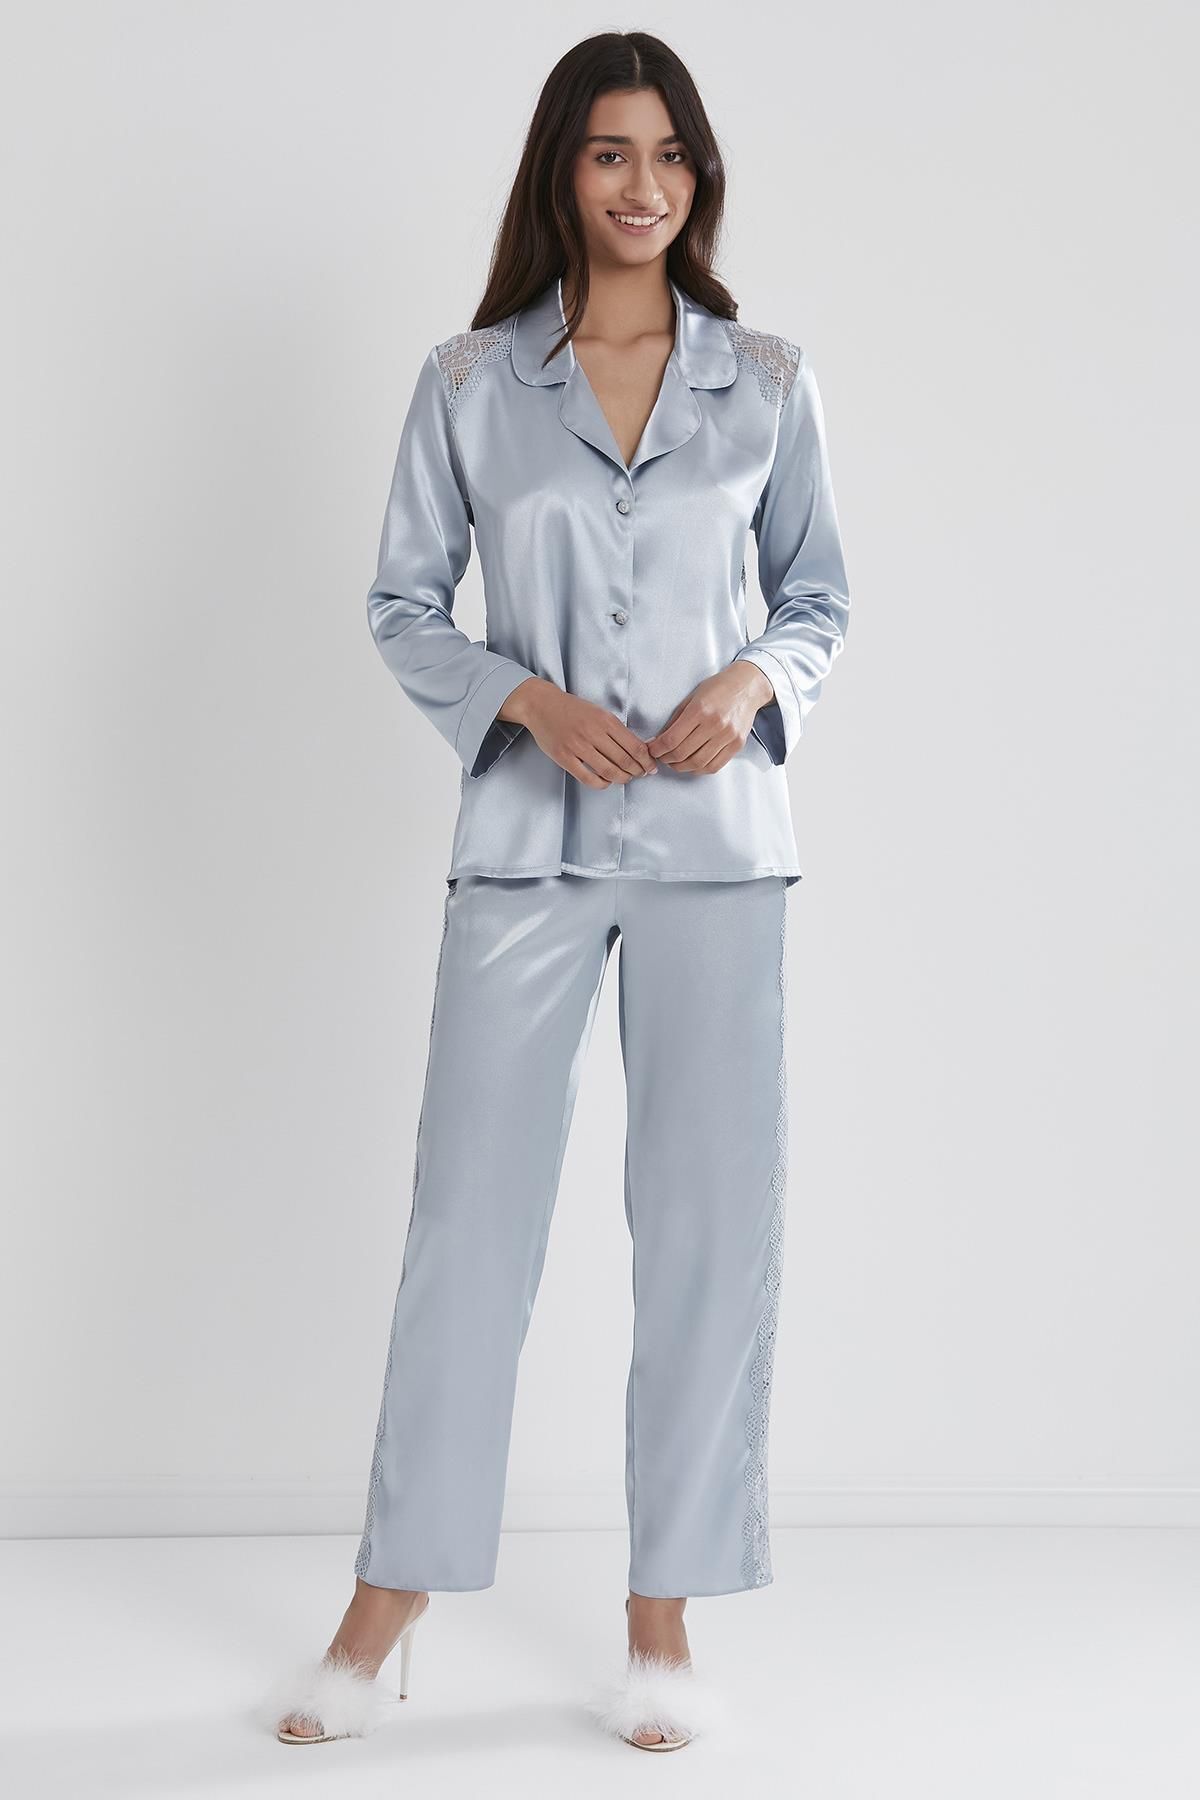 Pierre Cardin Kadın Saten Dantelli Pijama Takımı -1438 Mist